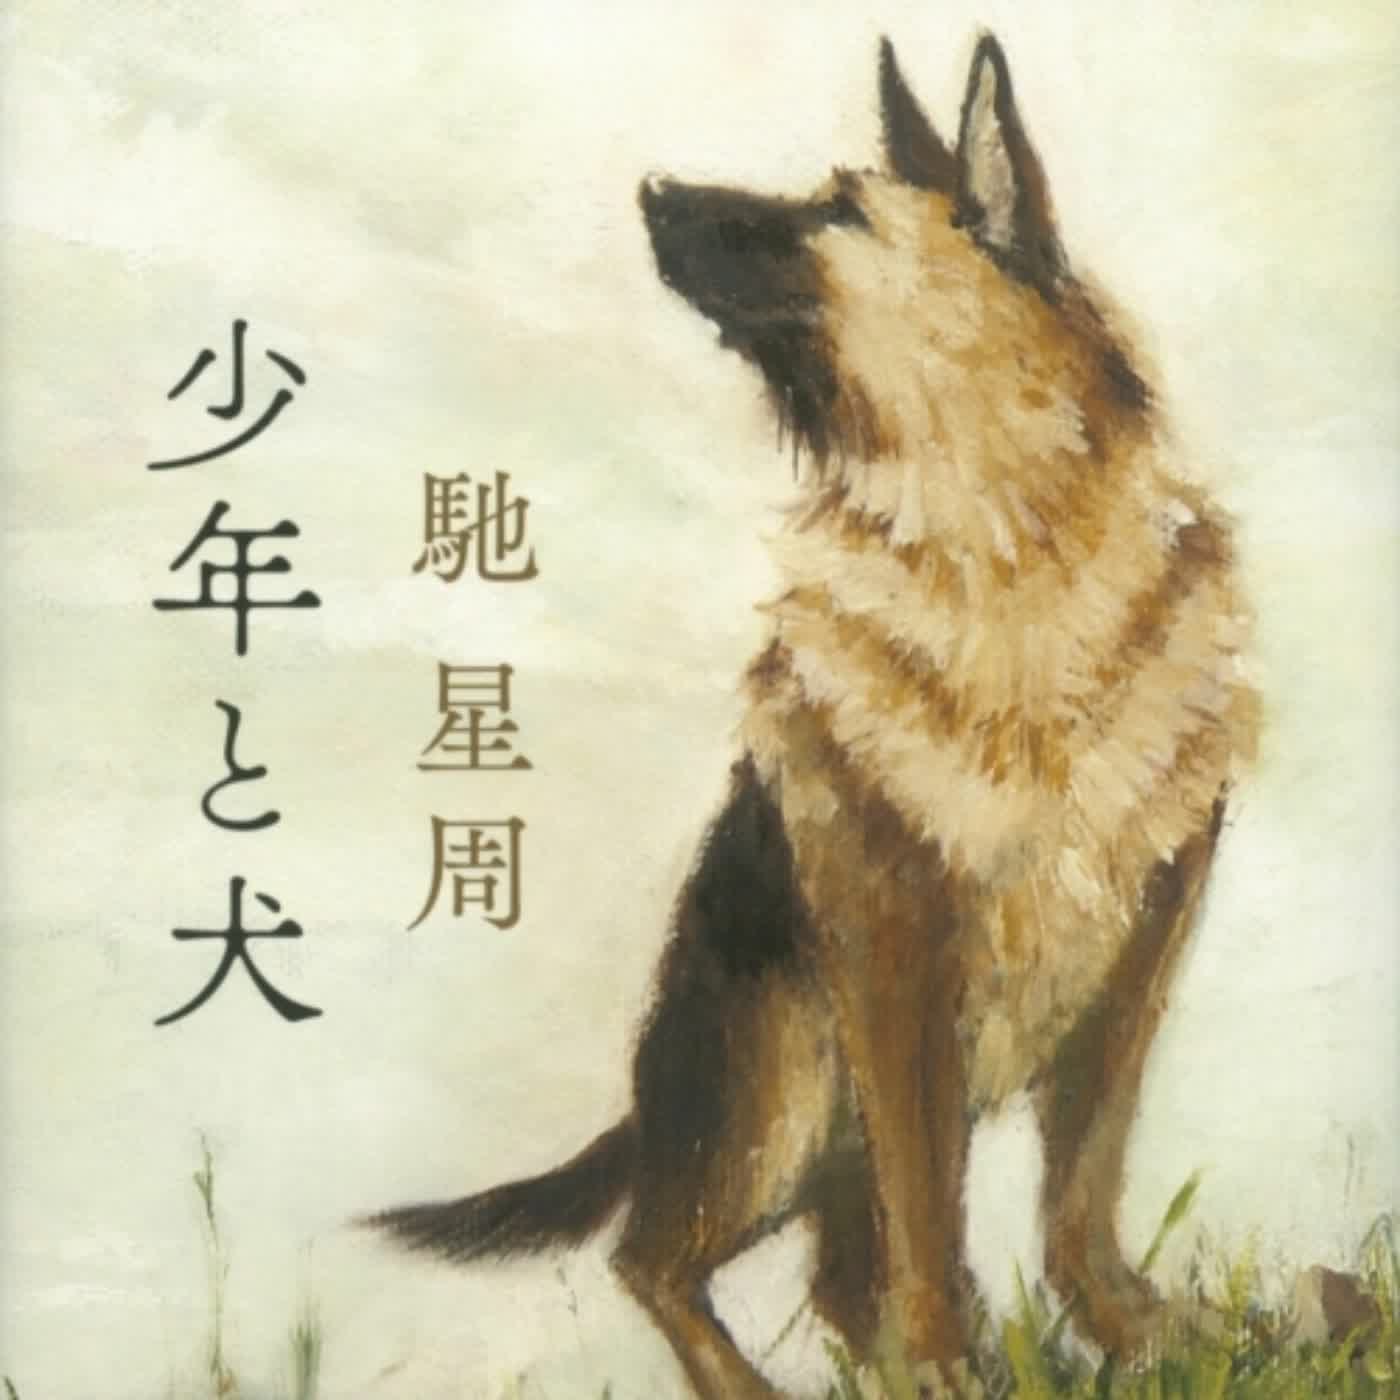 重磅一頁書 EP.09《少年與犬》（上）：日本異色作家馳星周與「暗黑小說」